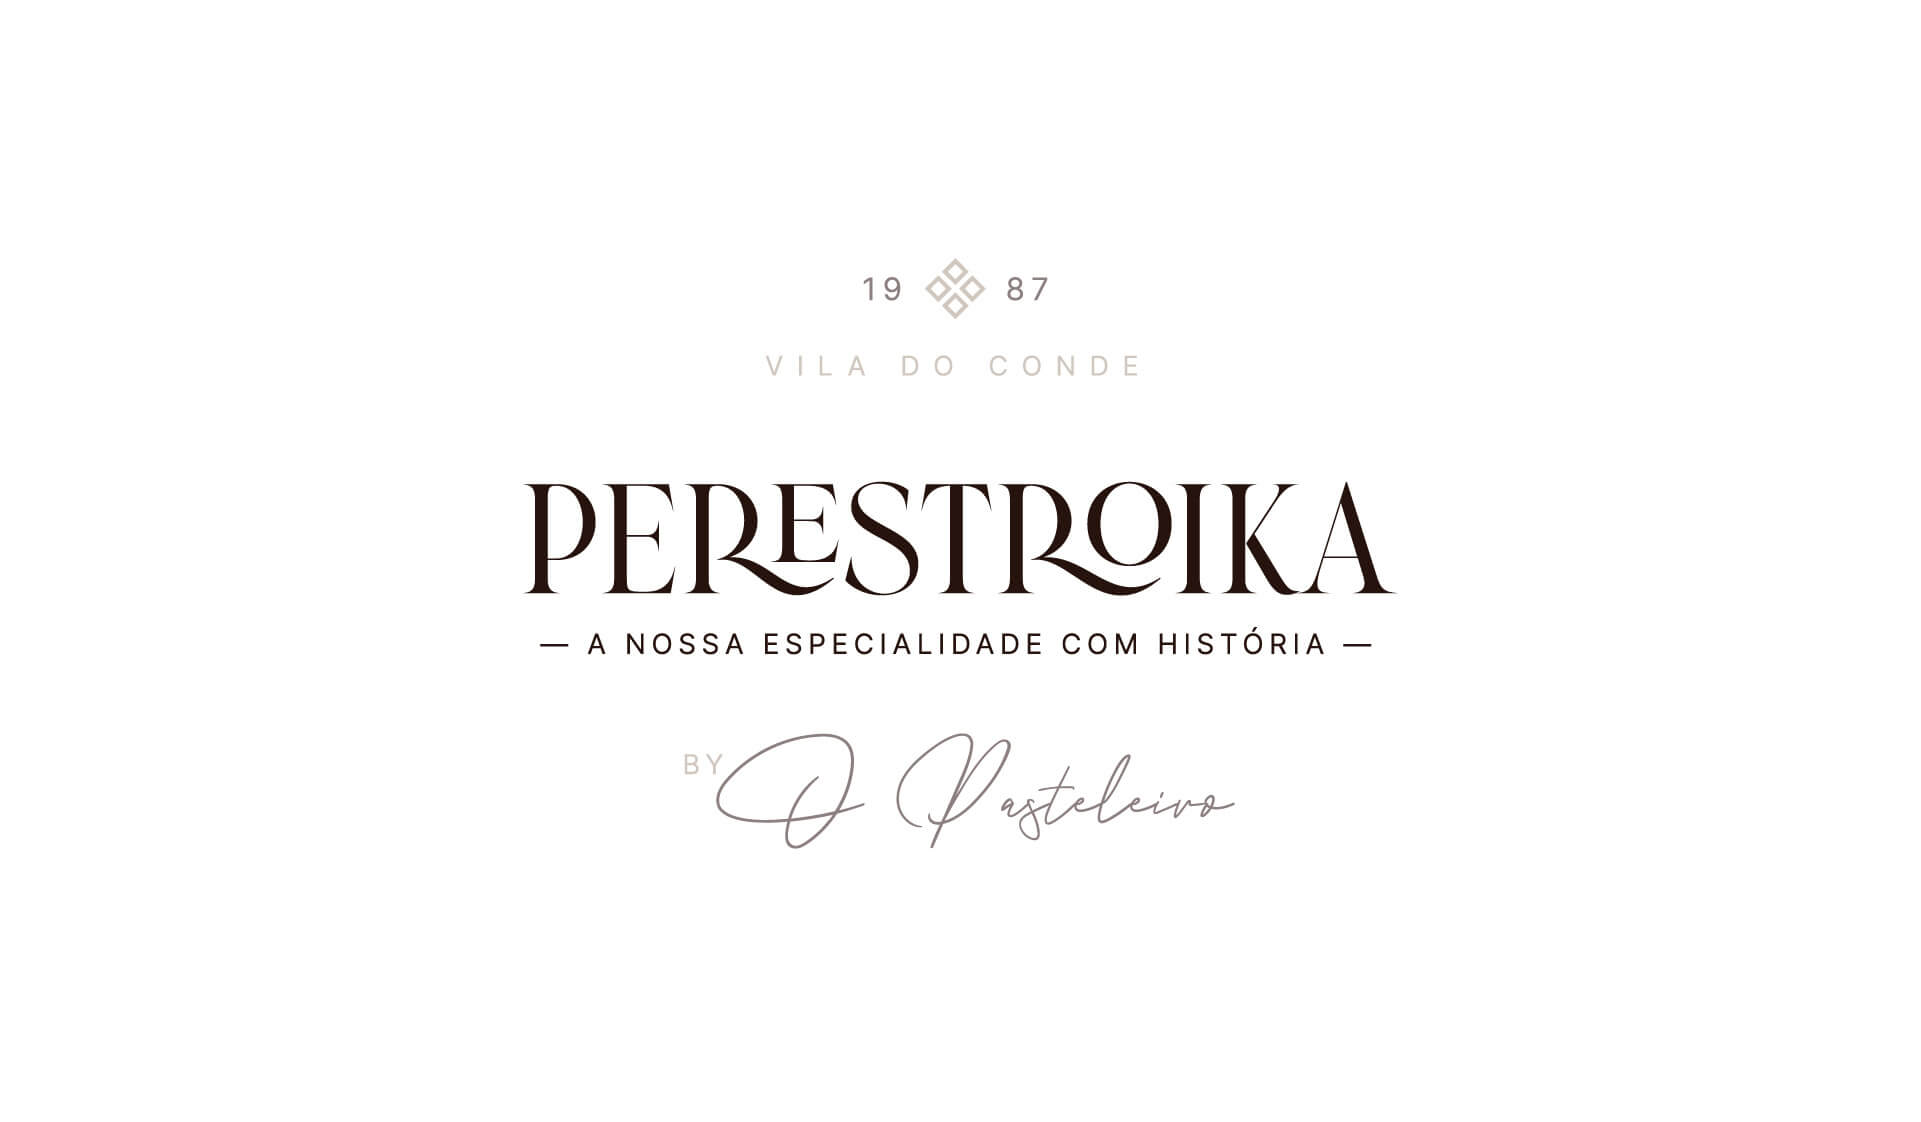 Perestroika by O Pasteleiro